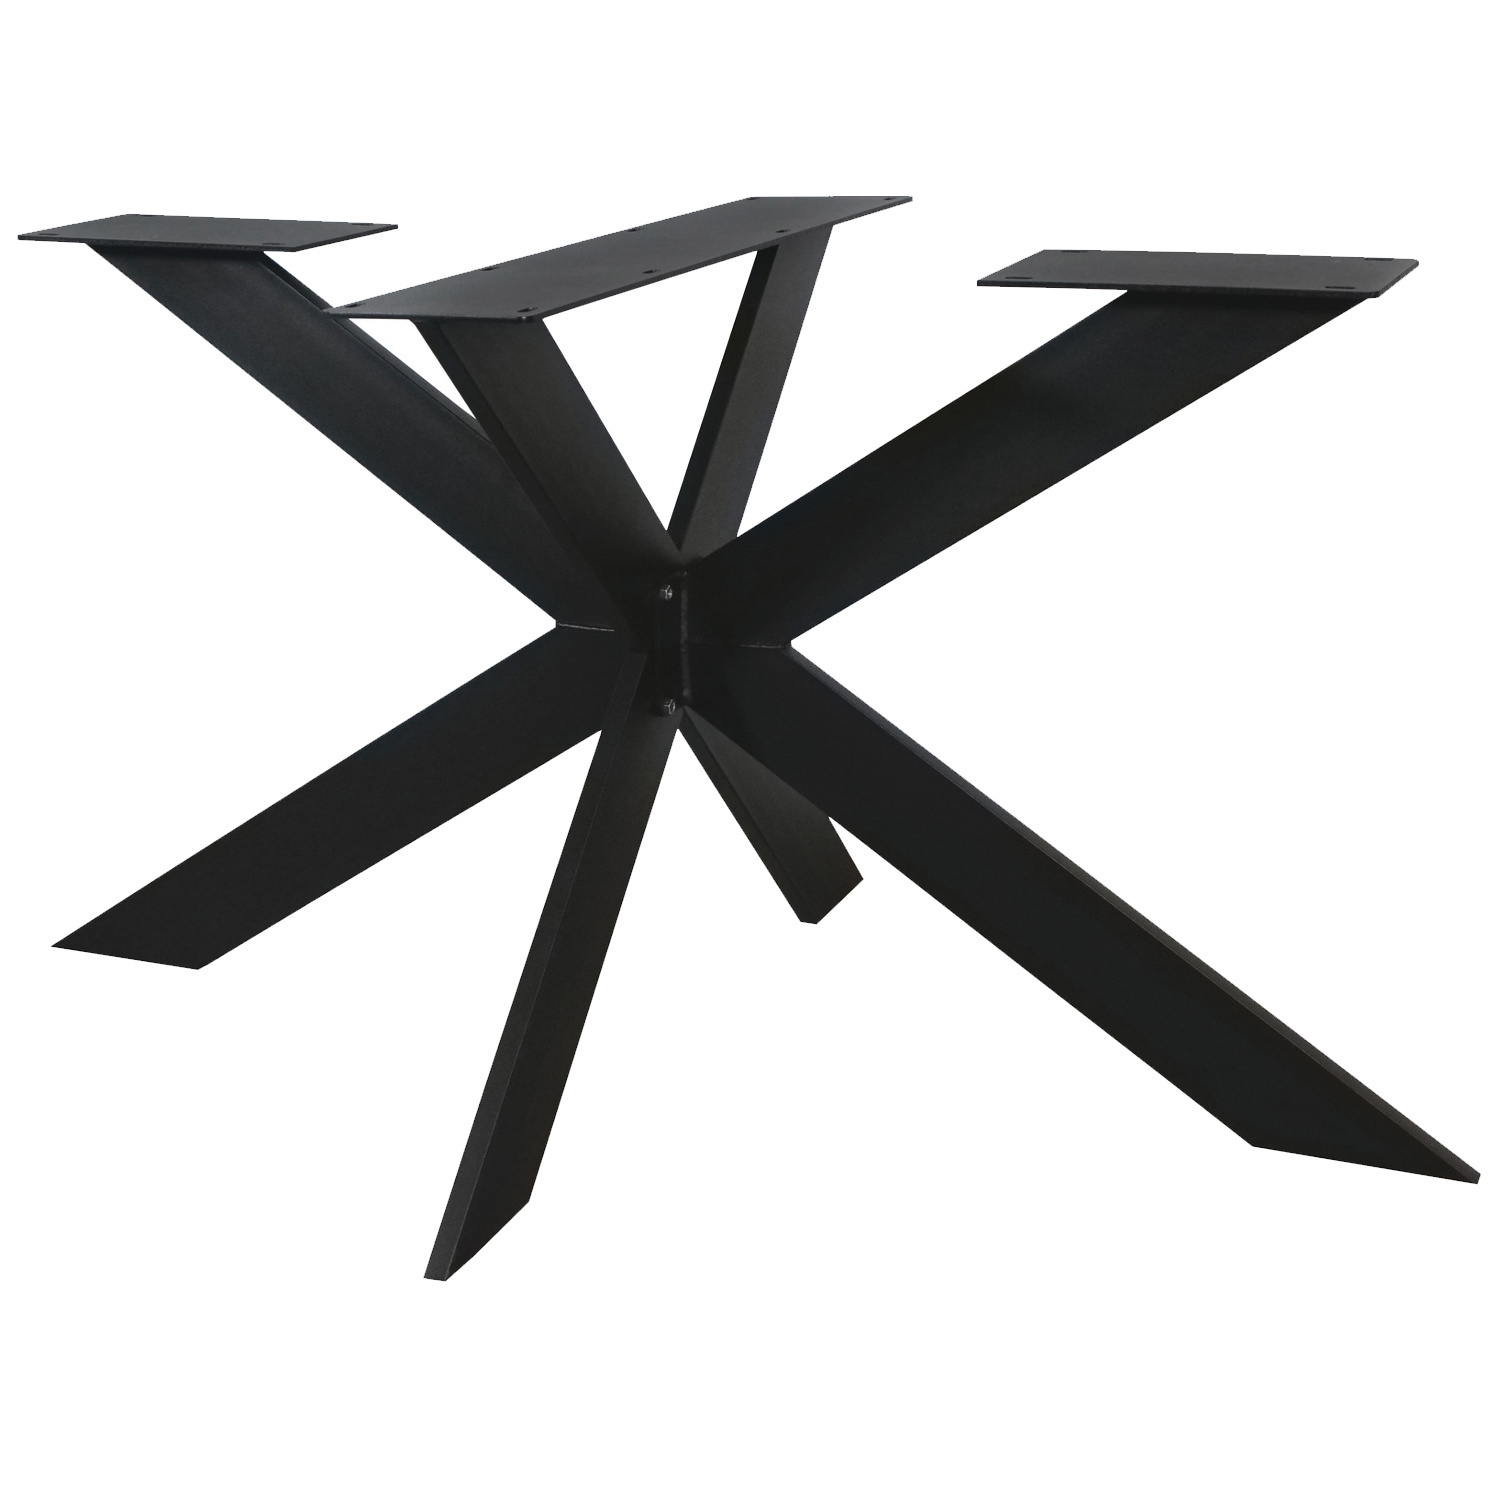  Tischgestell Metall Spider schlank- 3-Teilig - 2x10 cm - 90x140 cm - 72cm hoch - Stahl Tischuntergestell / Mittelfuß Rechteck & oval - Beschichtet - Schwarz